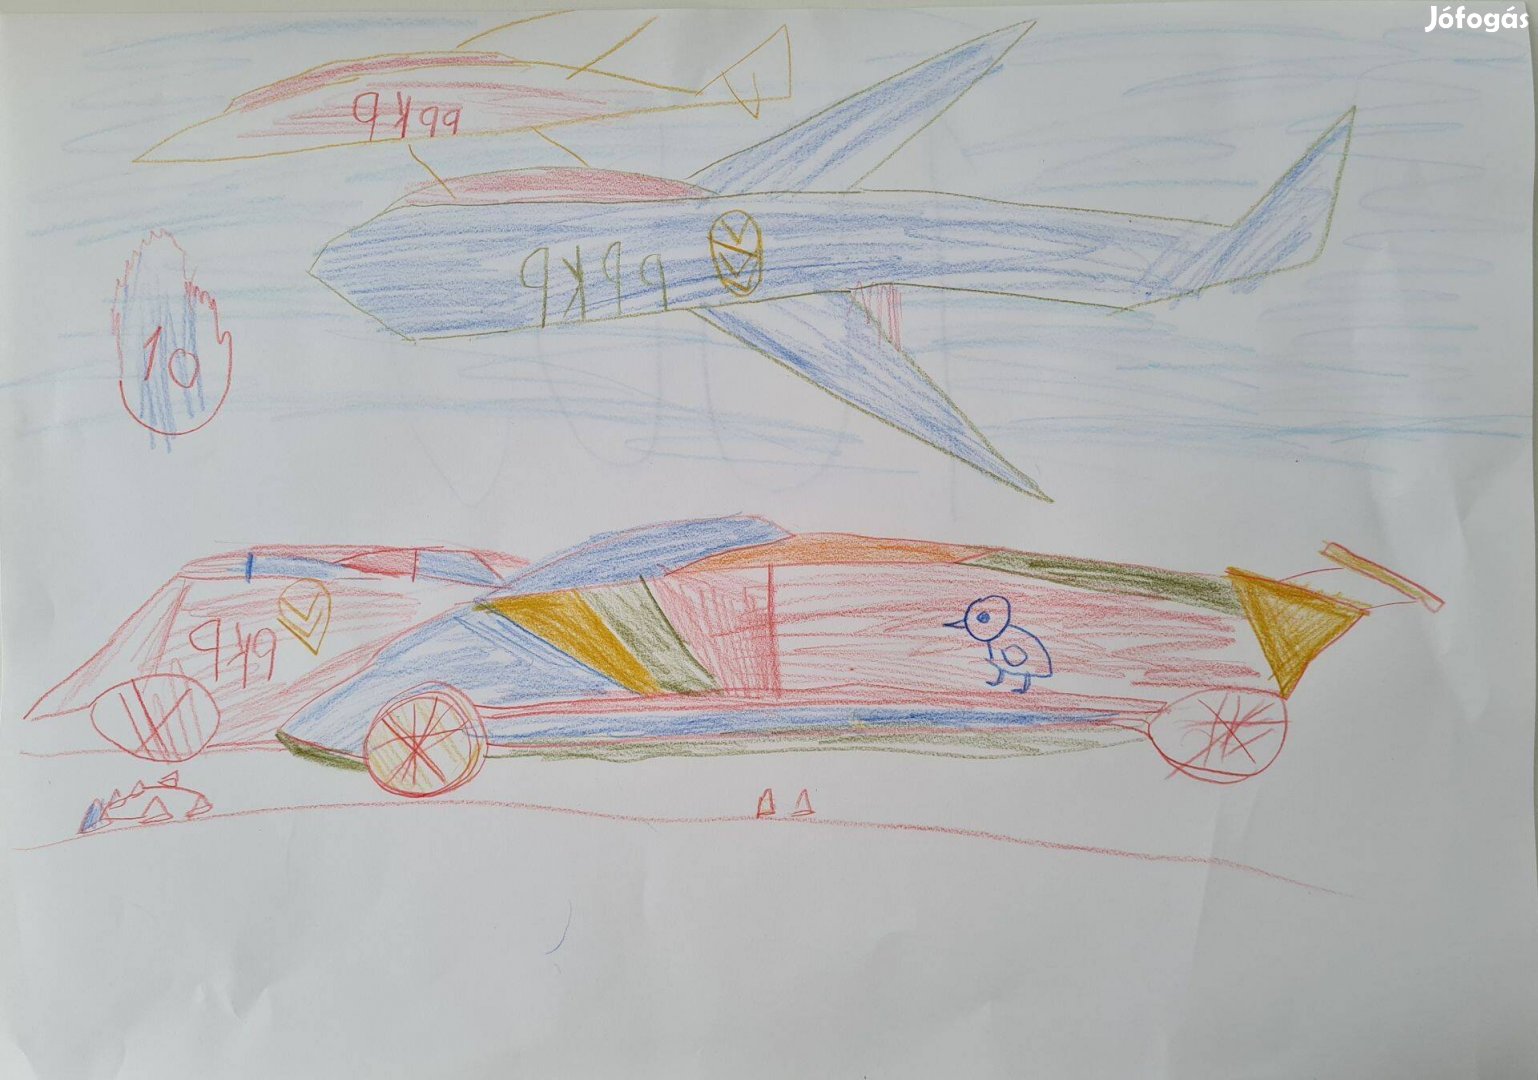 NFS Heat Lamborghini versenyautó + repülőgépek (A3 méretű ceruzarajz)